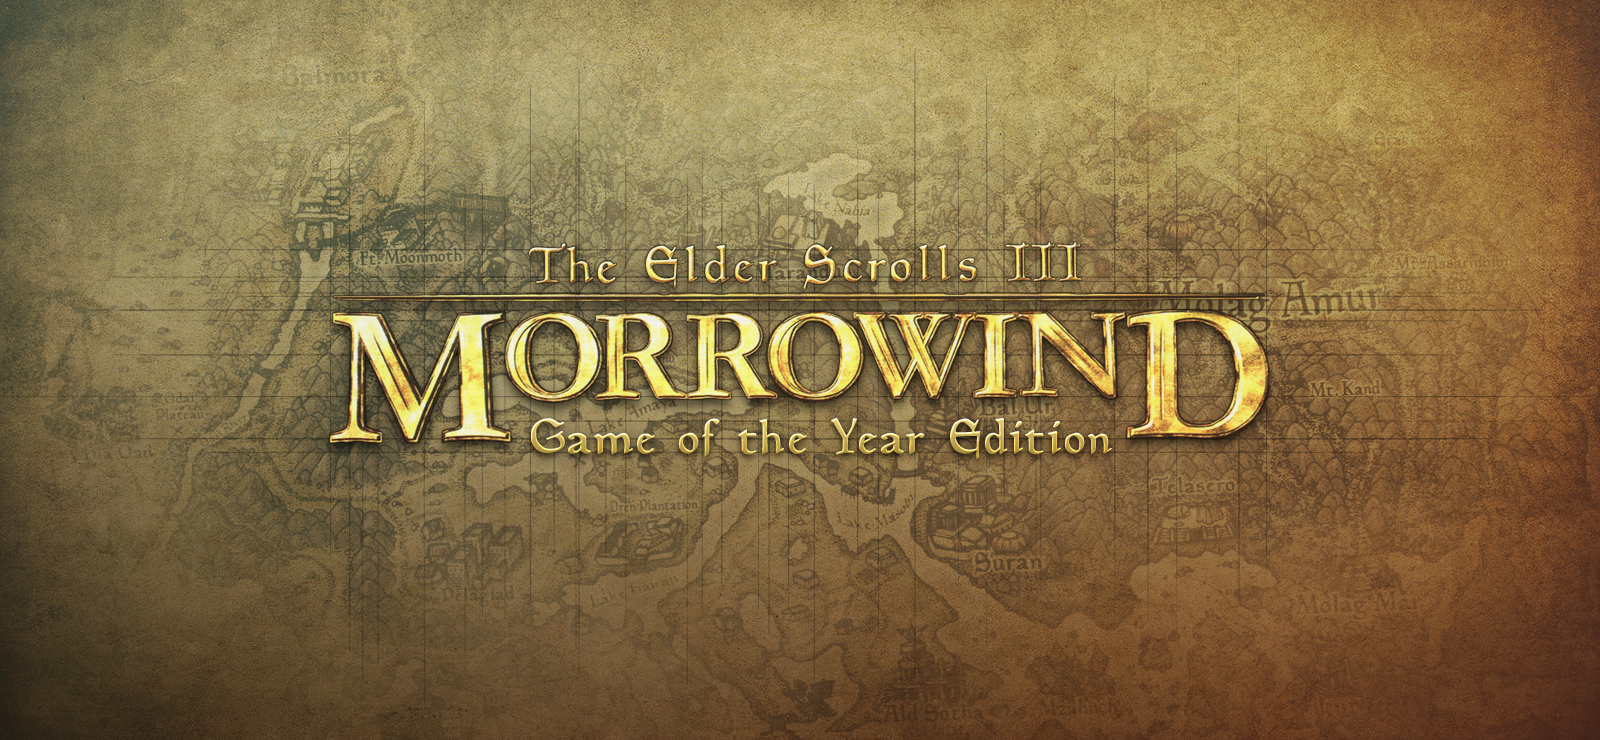 BESTSELLER - The Elder Scrolls III: Morrowind GOTY Edition